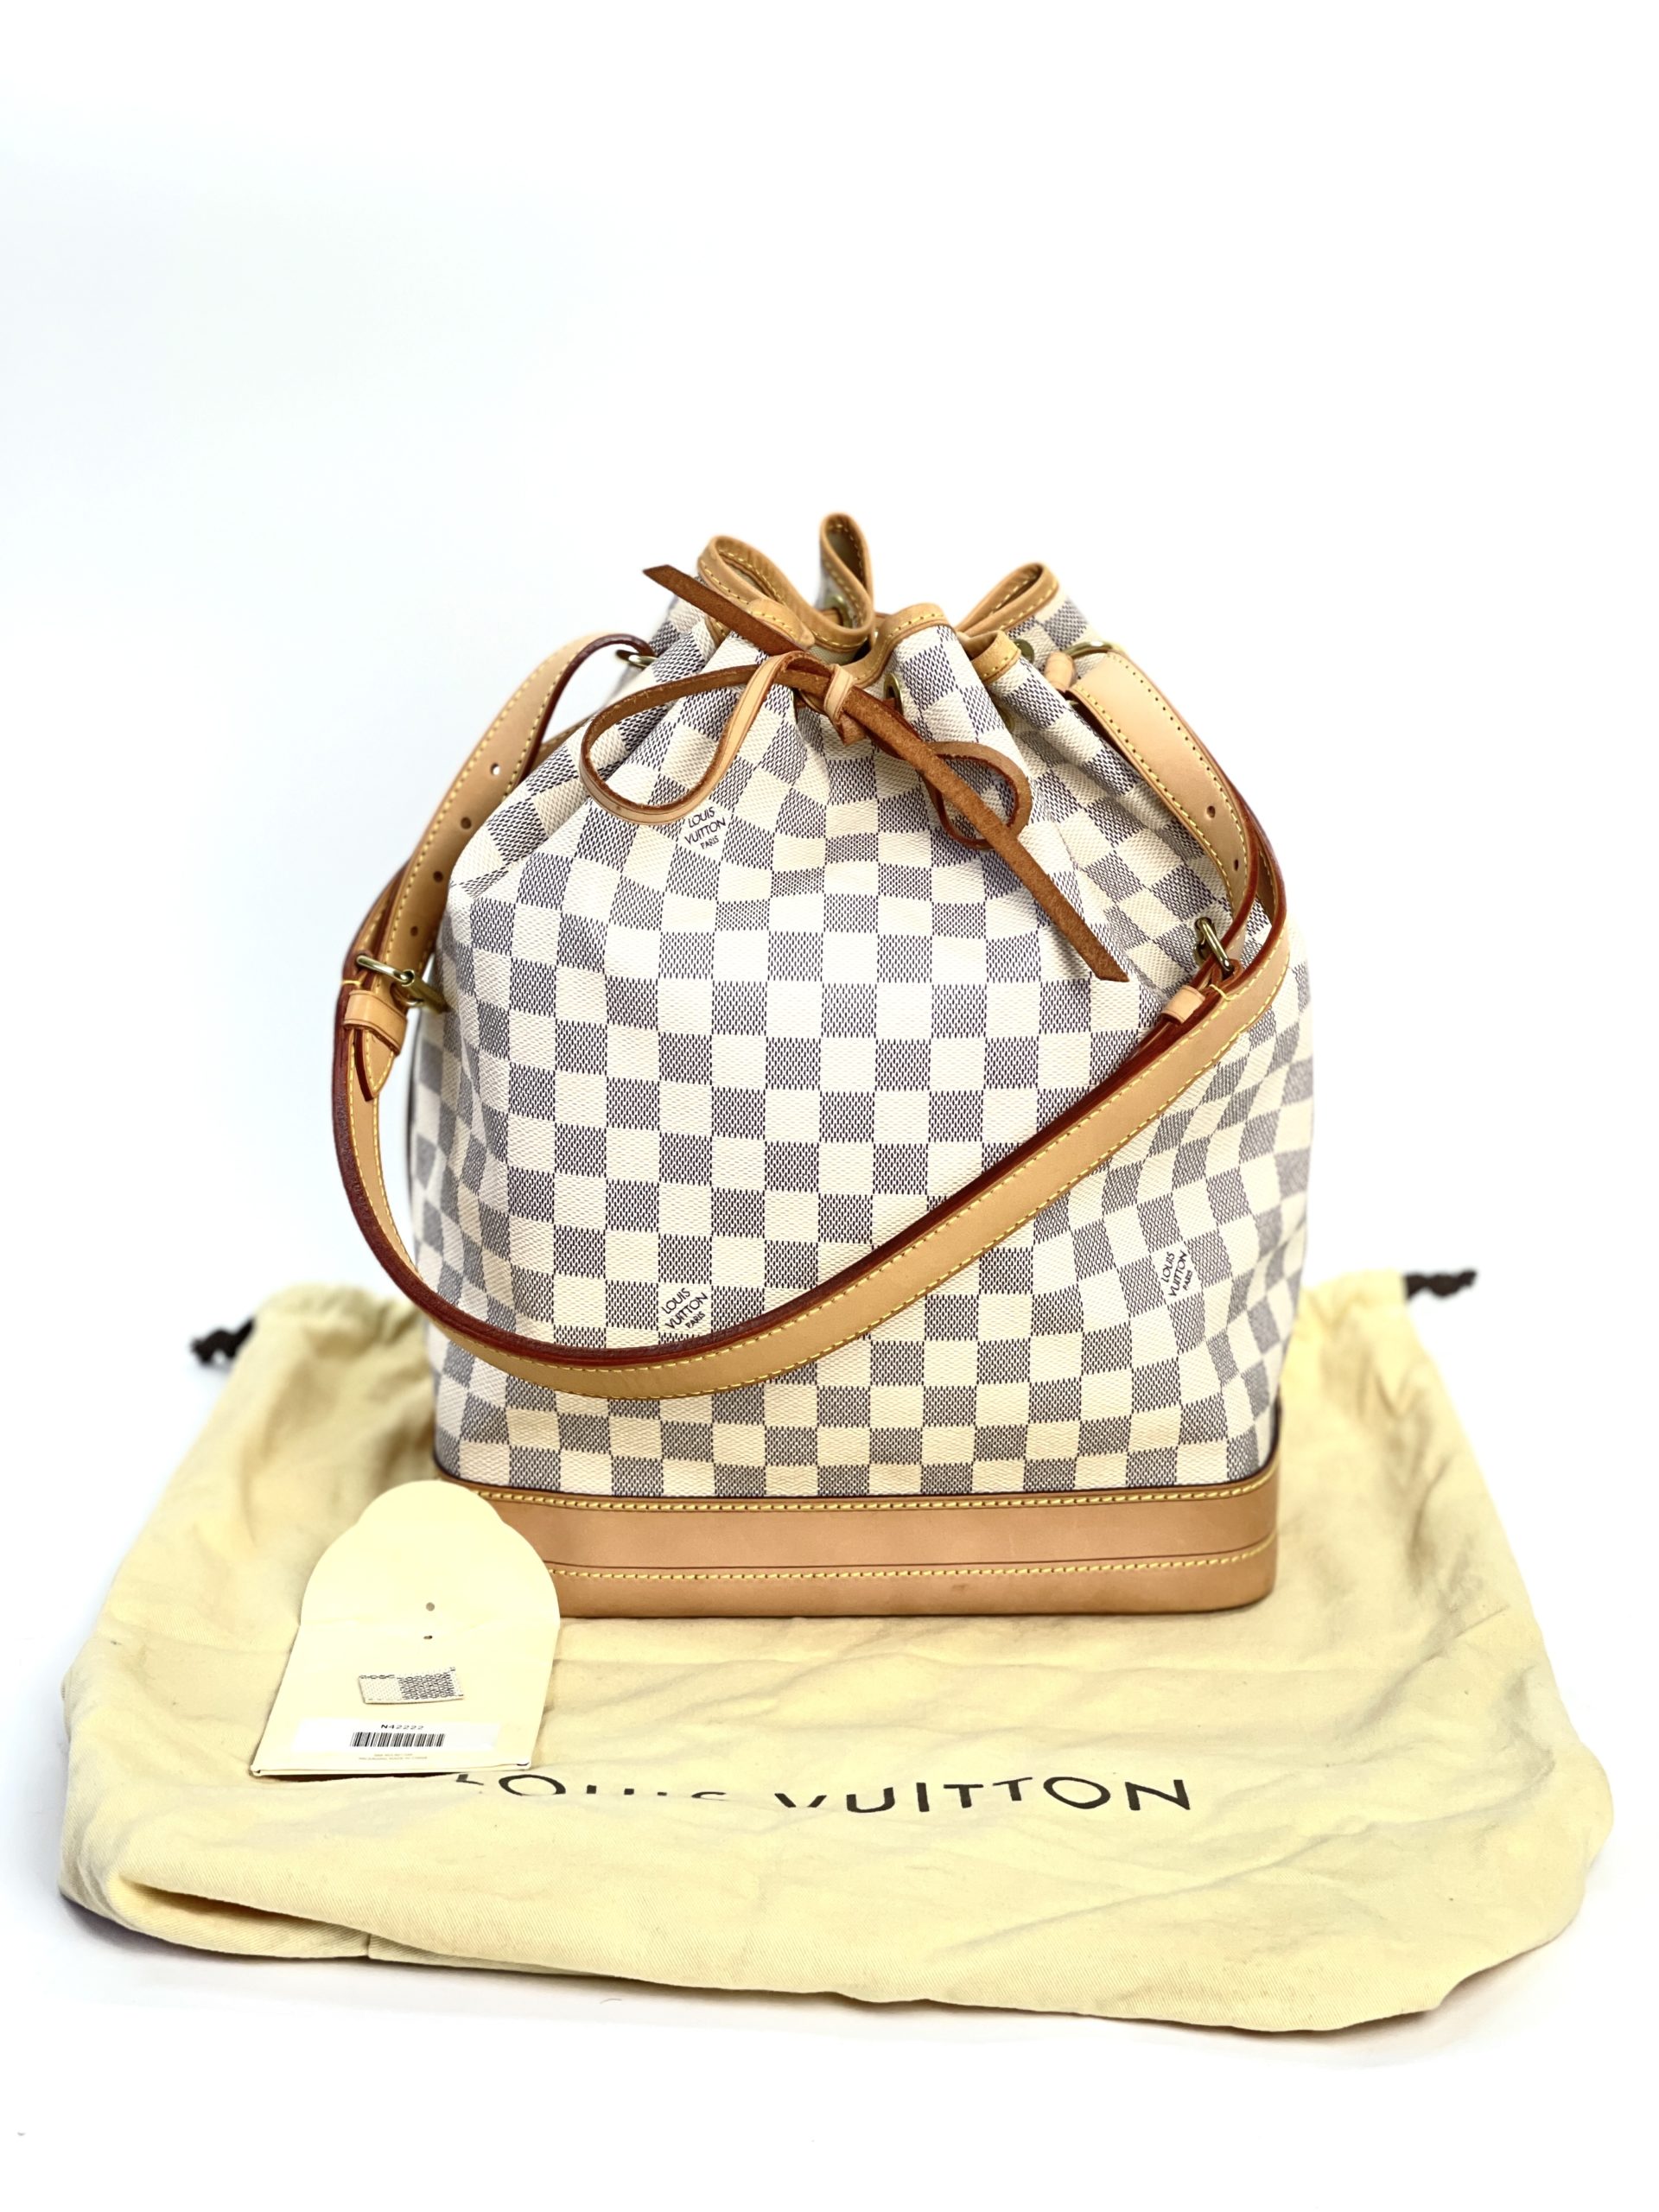 LOUIS VUITTON Large Noe Damier Azur Shoulder Bag